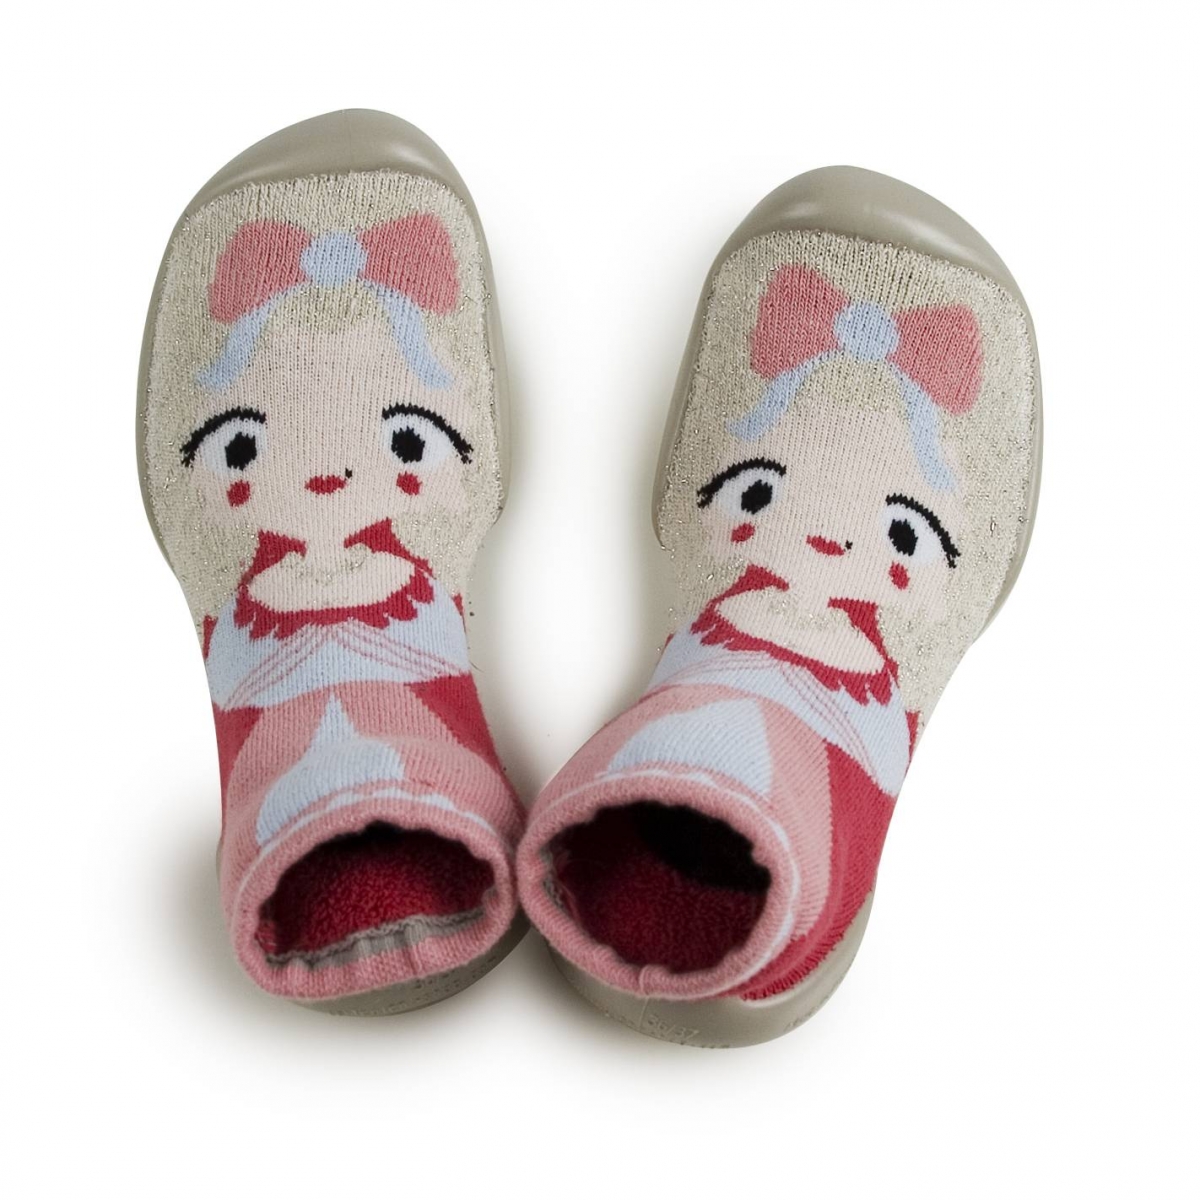 Collégien - Slippers socks Marie antoinette - 슬리퍼 - 154A123 